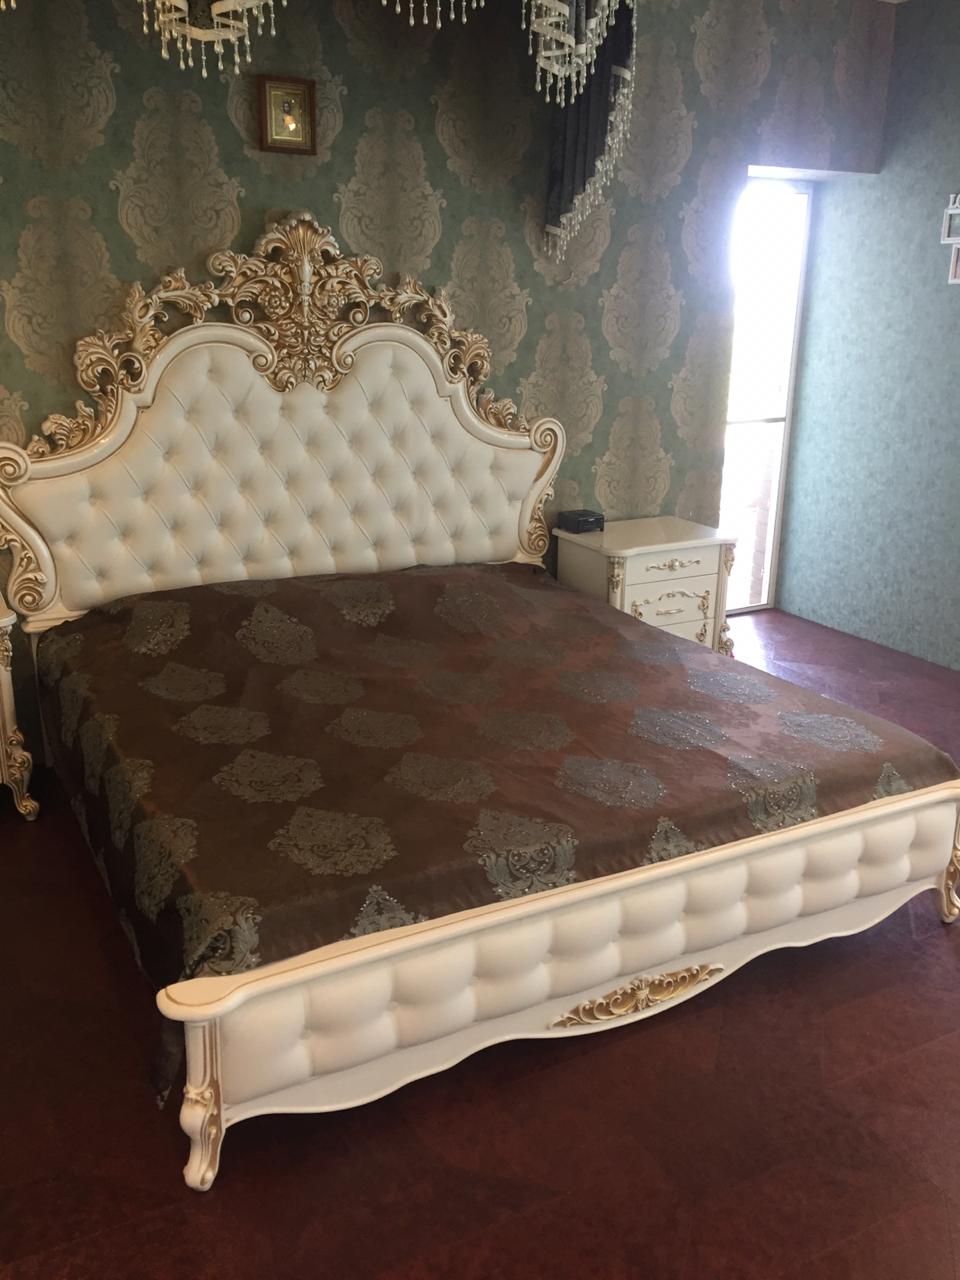 Кровать Флоренция